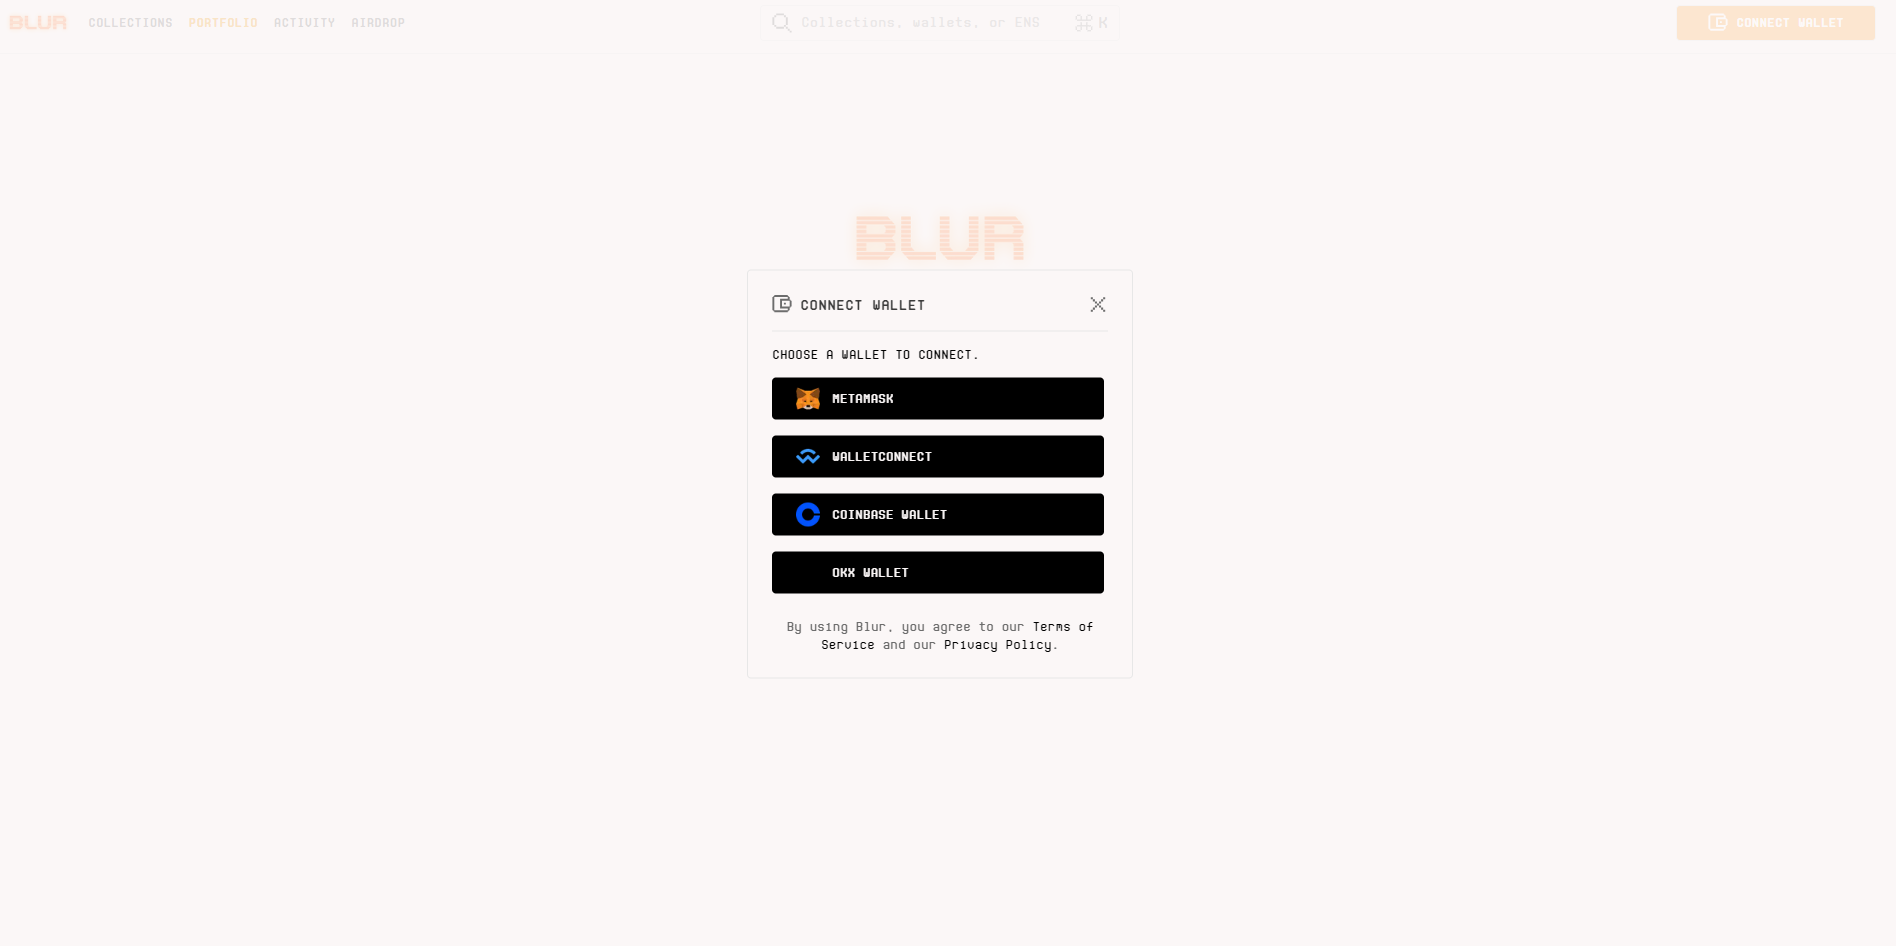 hướng dẫn sử dụng Blur